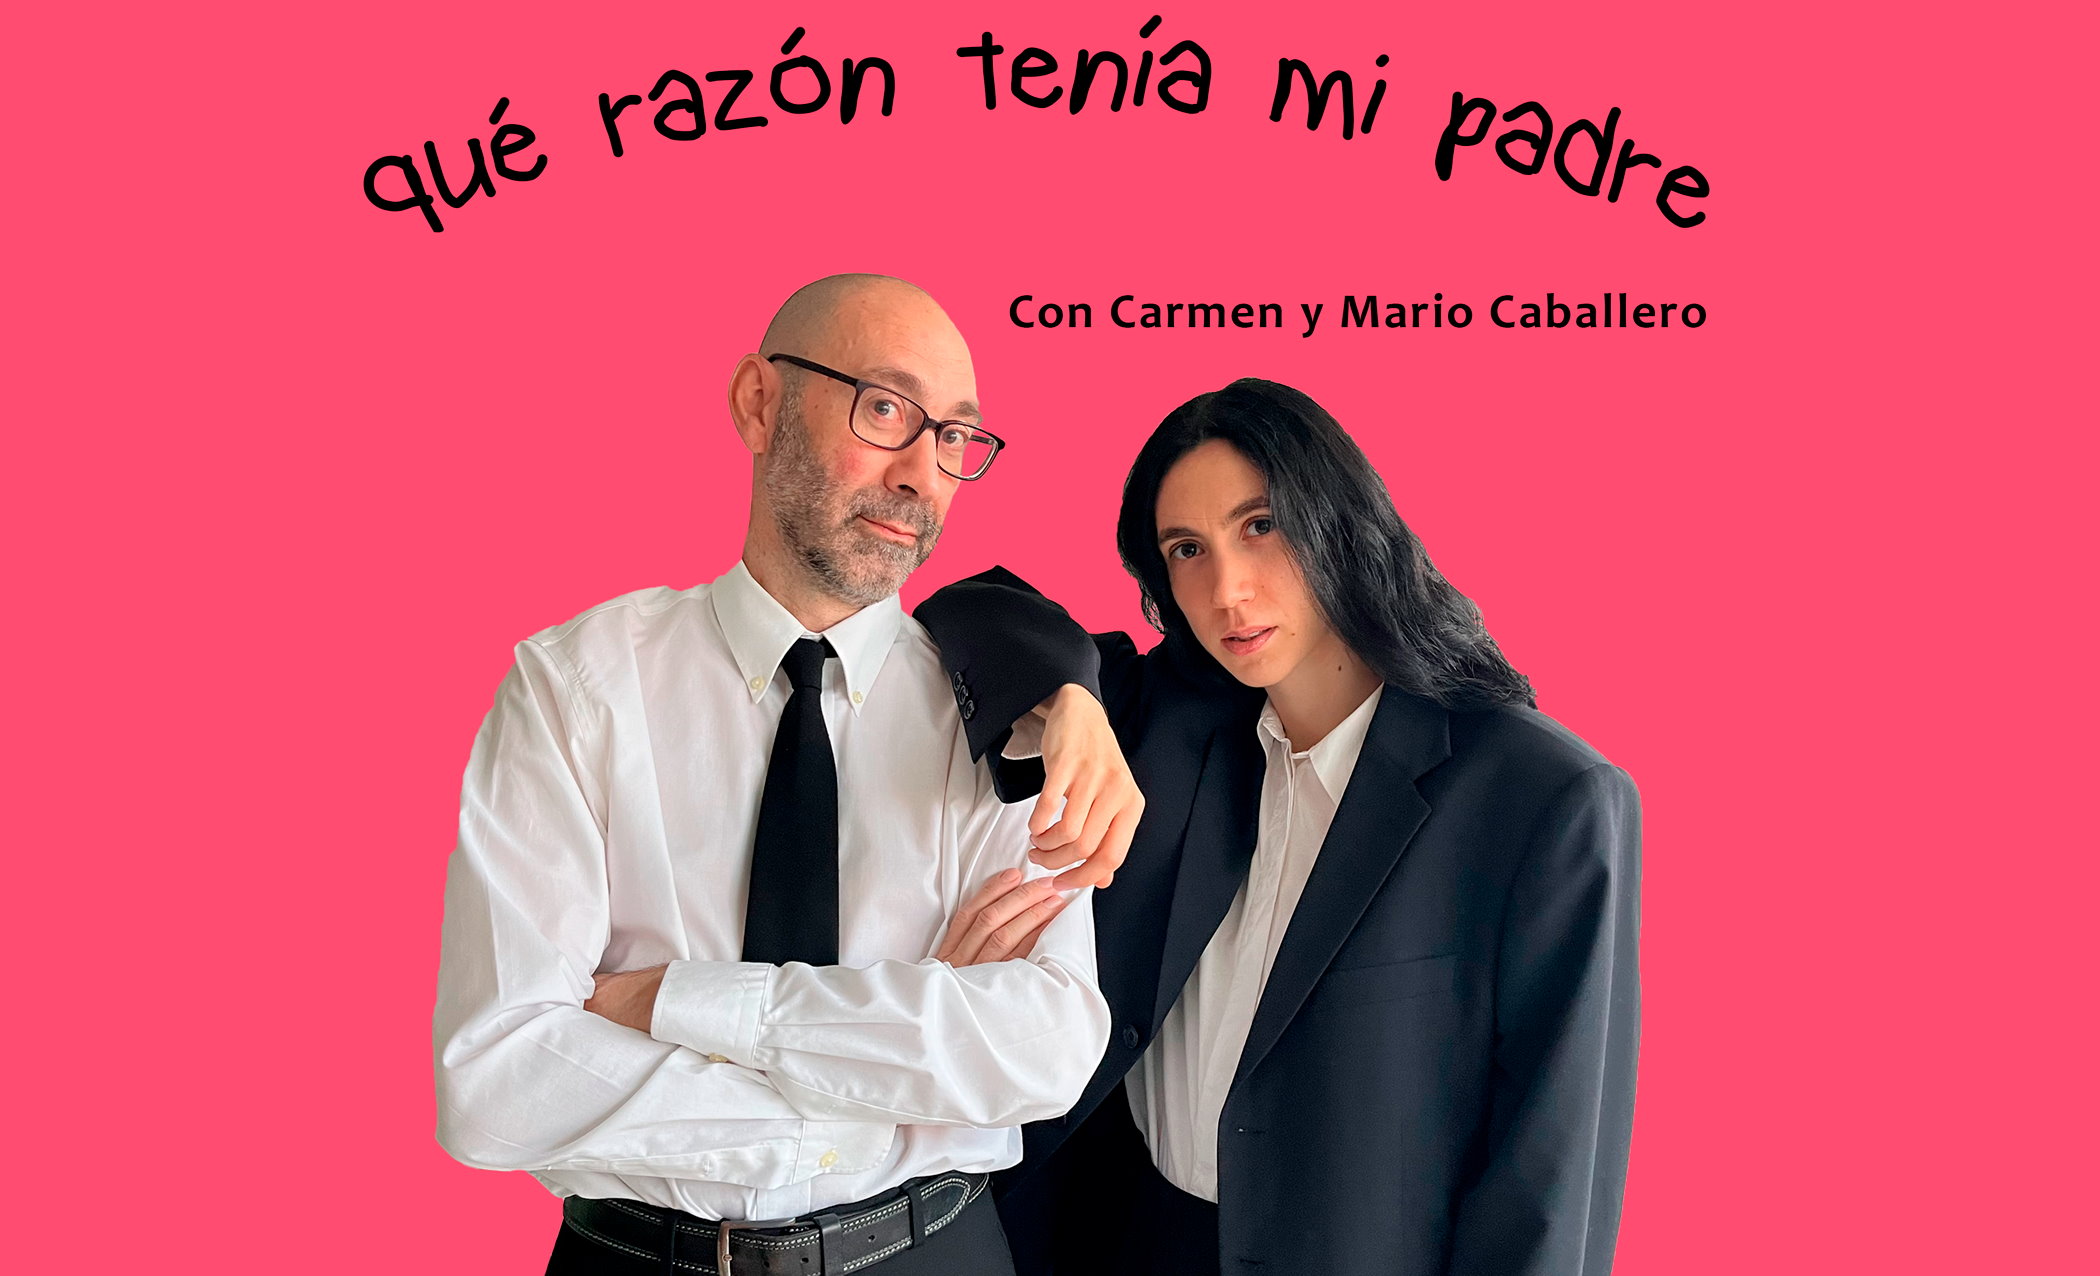 Mario Caballero, el padre; y Carmen Caballero, la hija. "Qué razón tenía mi padre" es el título de su podcast.